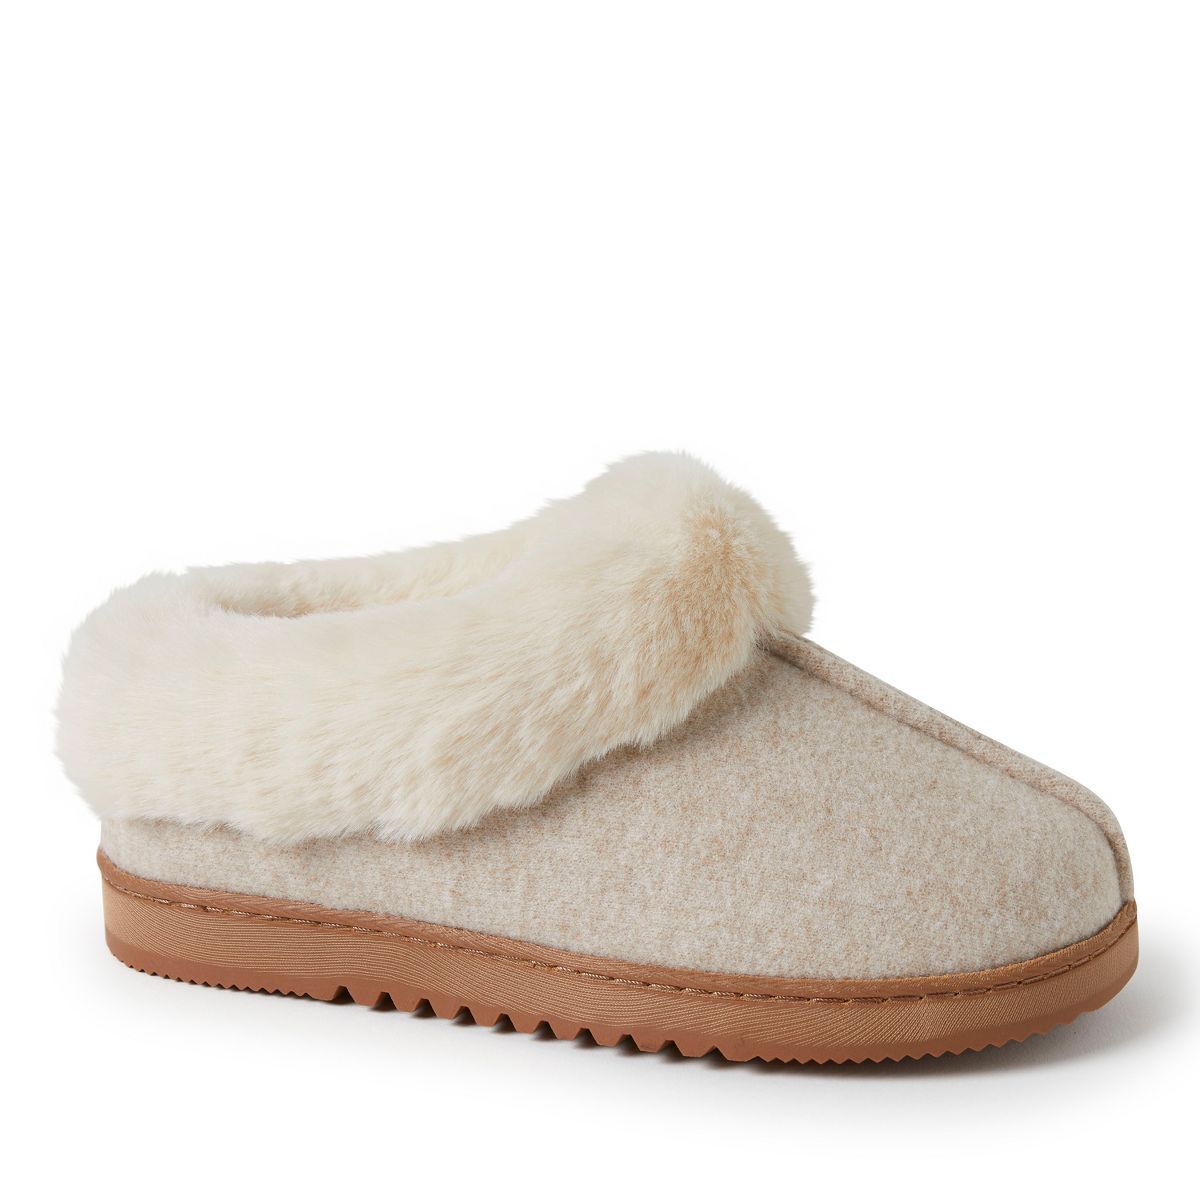 Dearfoams Women's Chloe Soft Knit Clog Slippers | Target